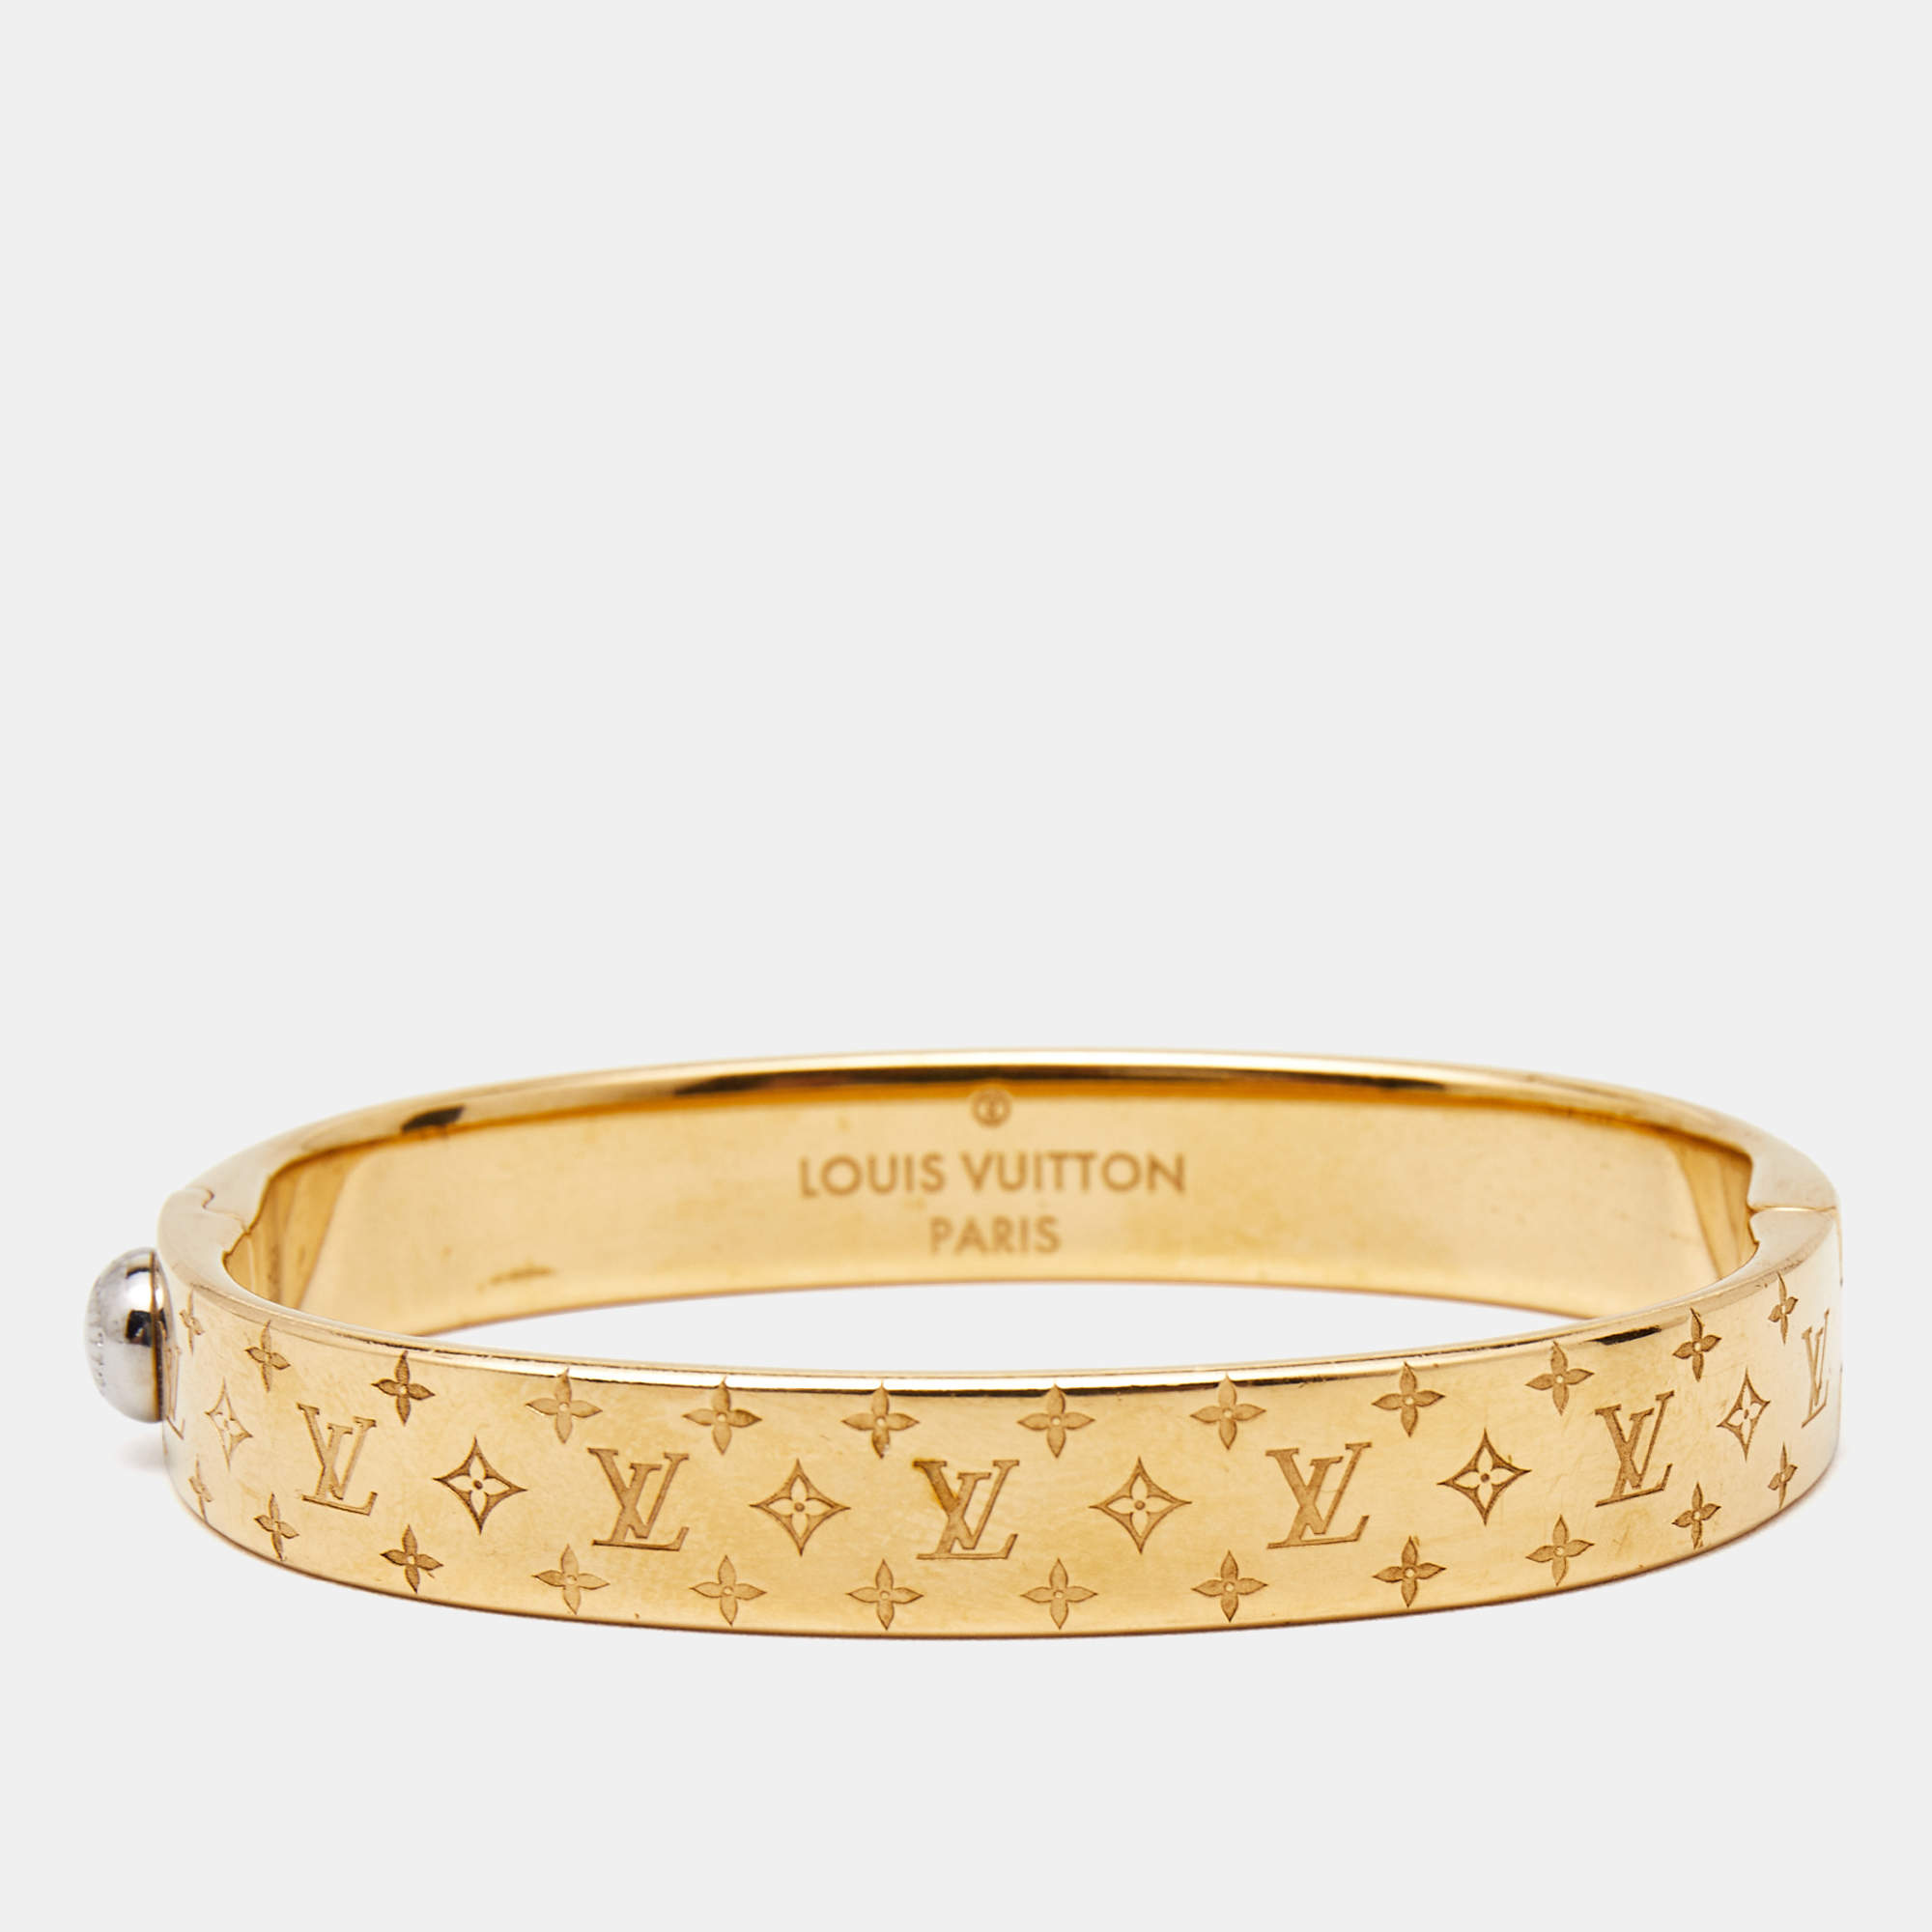 Louis Vuitton, Jewelry, Louis Vuitton Nanogram Silver Bracelet Size M  Authentic New Condition